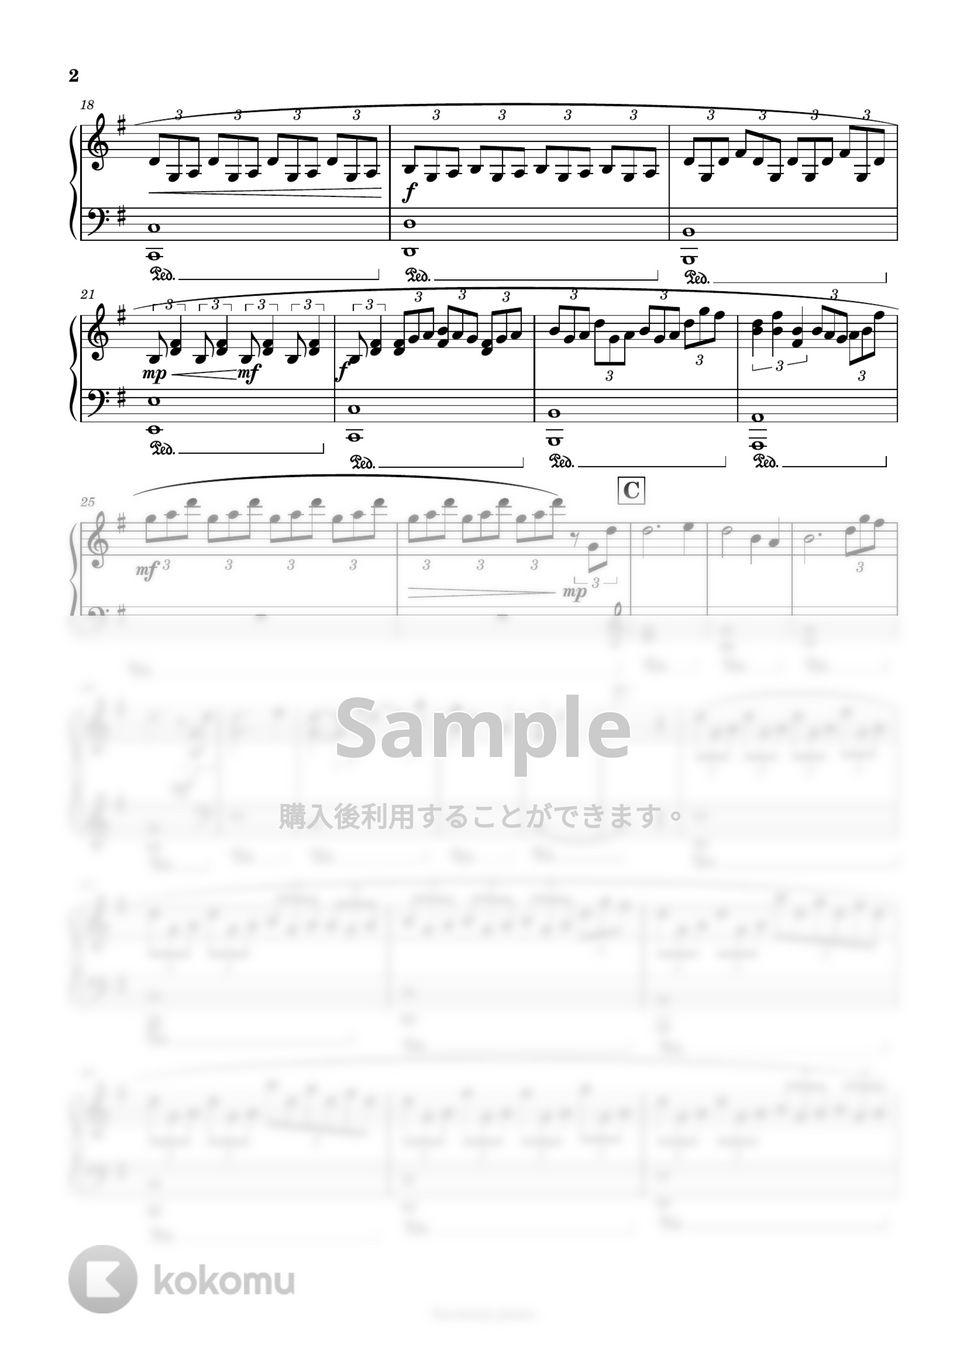 純愛ディソナンス - メインテーマ (ピアノソロ) by harmony piano